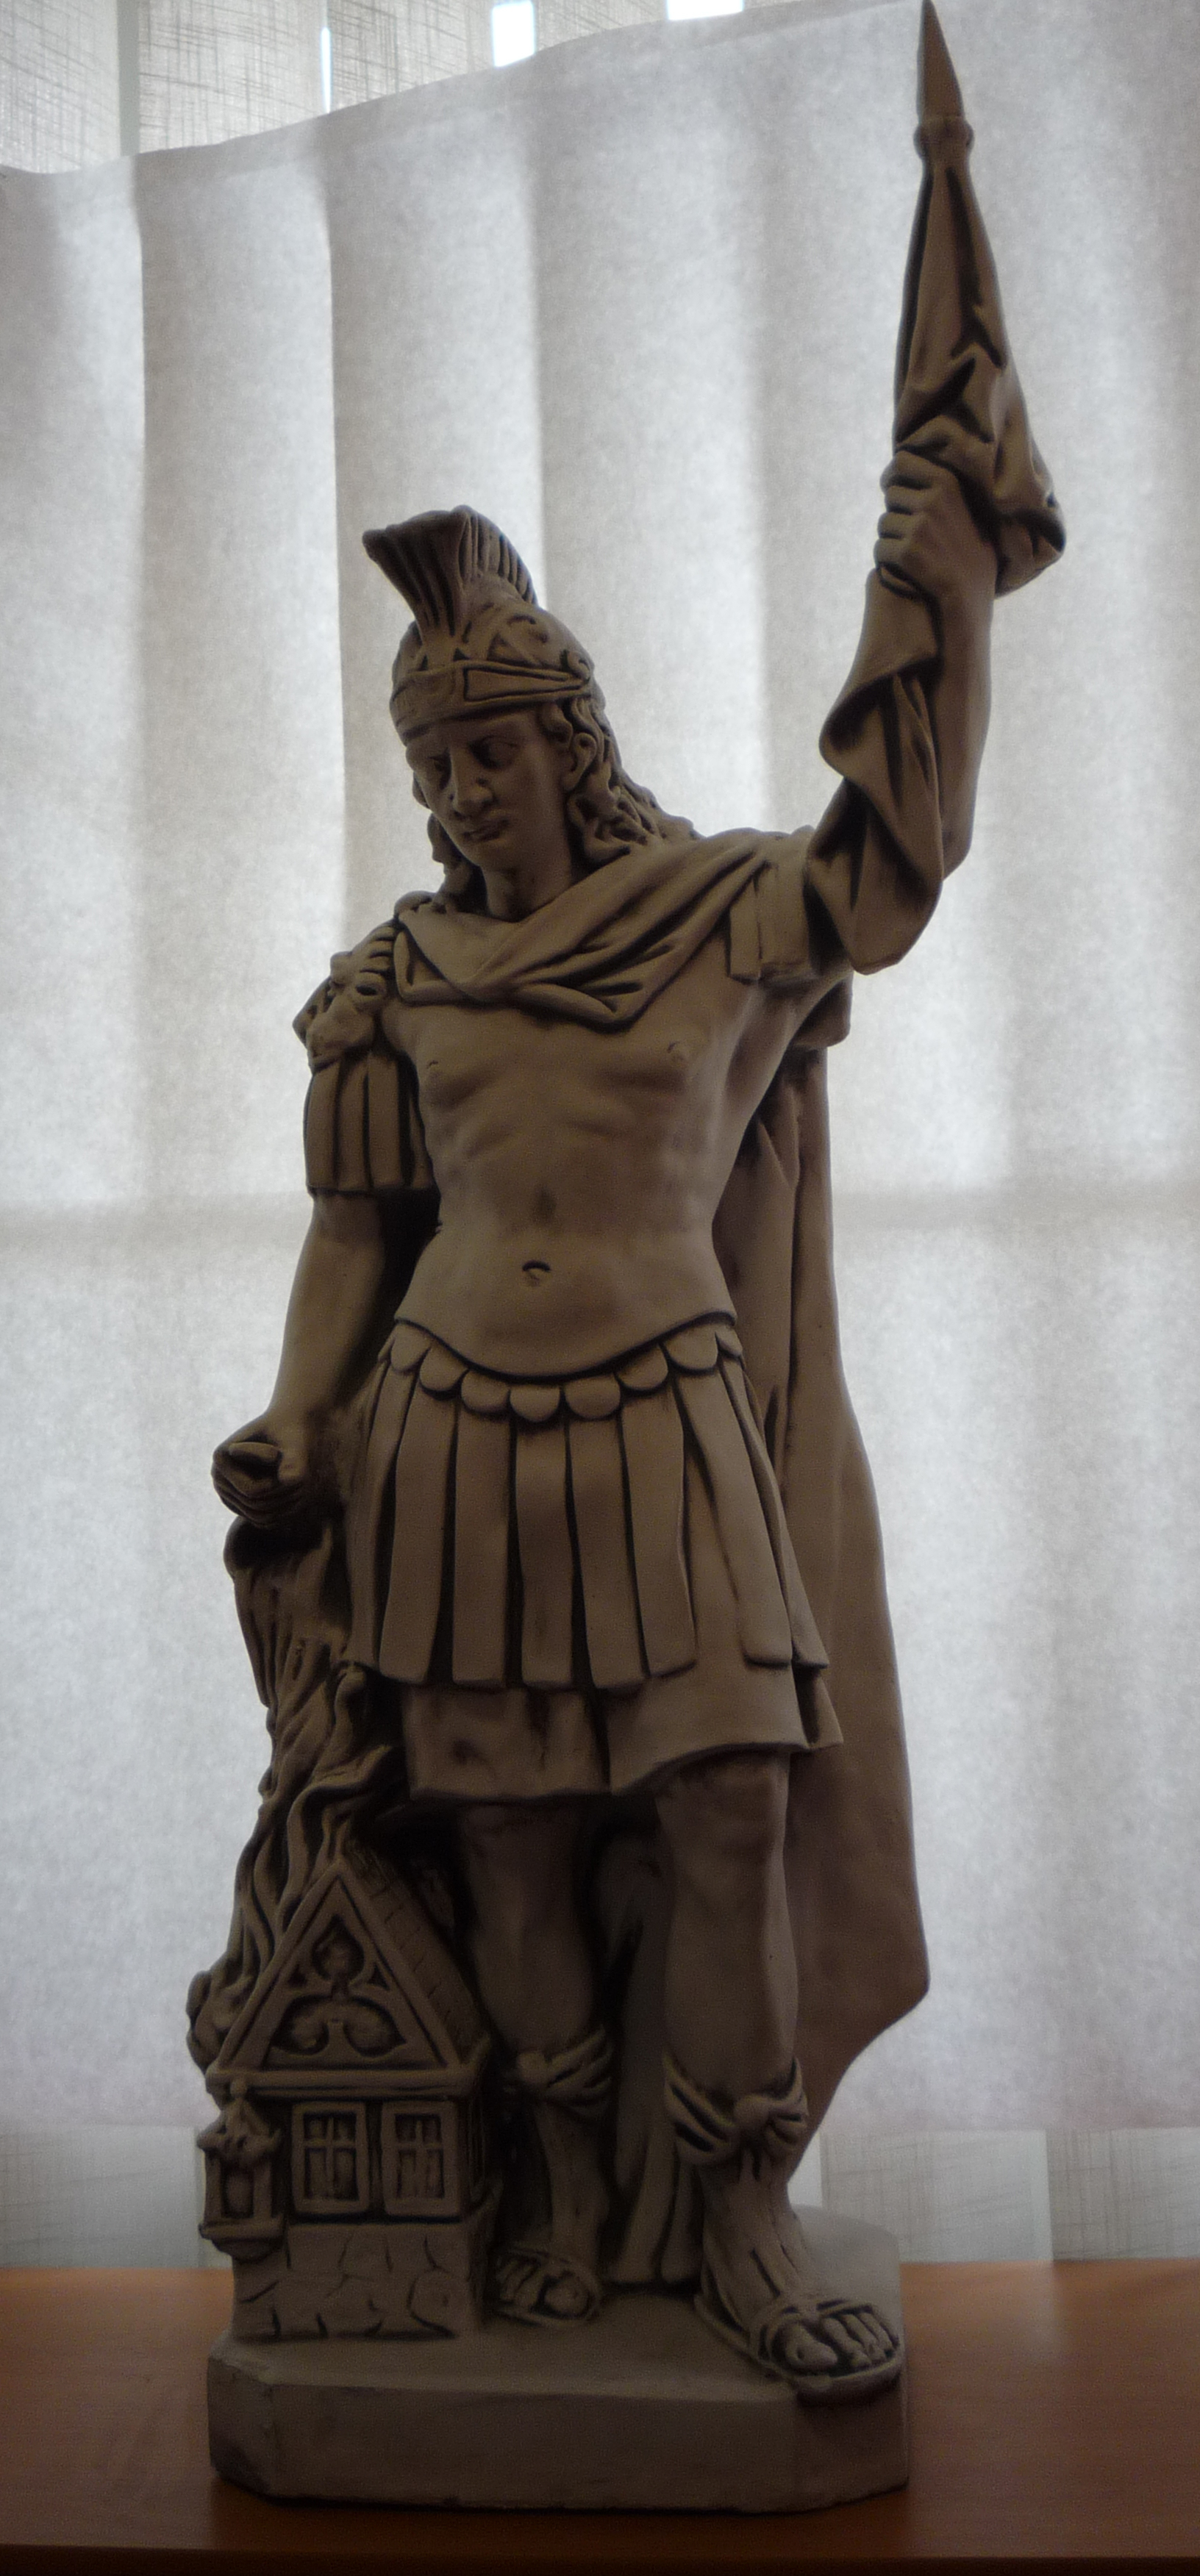 Socha betónová  Sv. Florián 110 cm, zaoblený spodok sochy 30 x25 cm